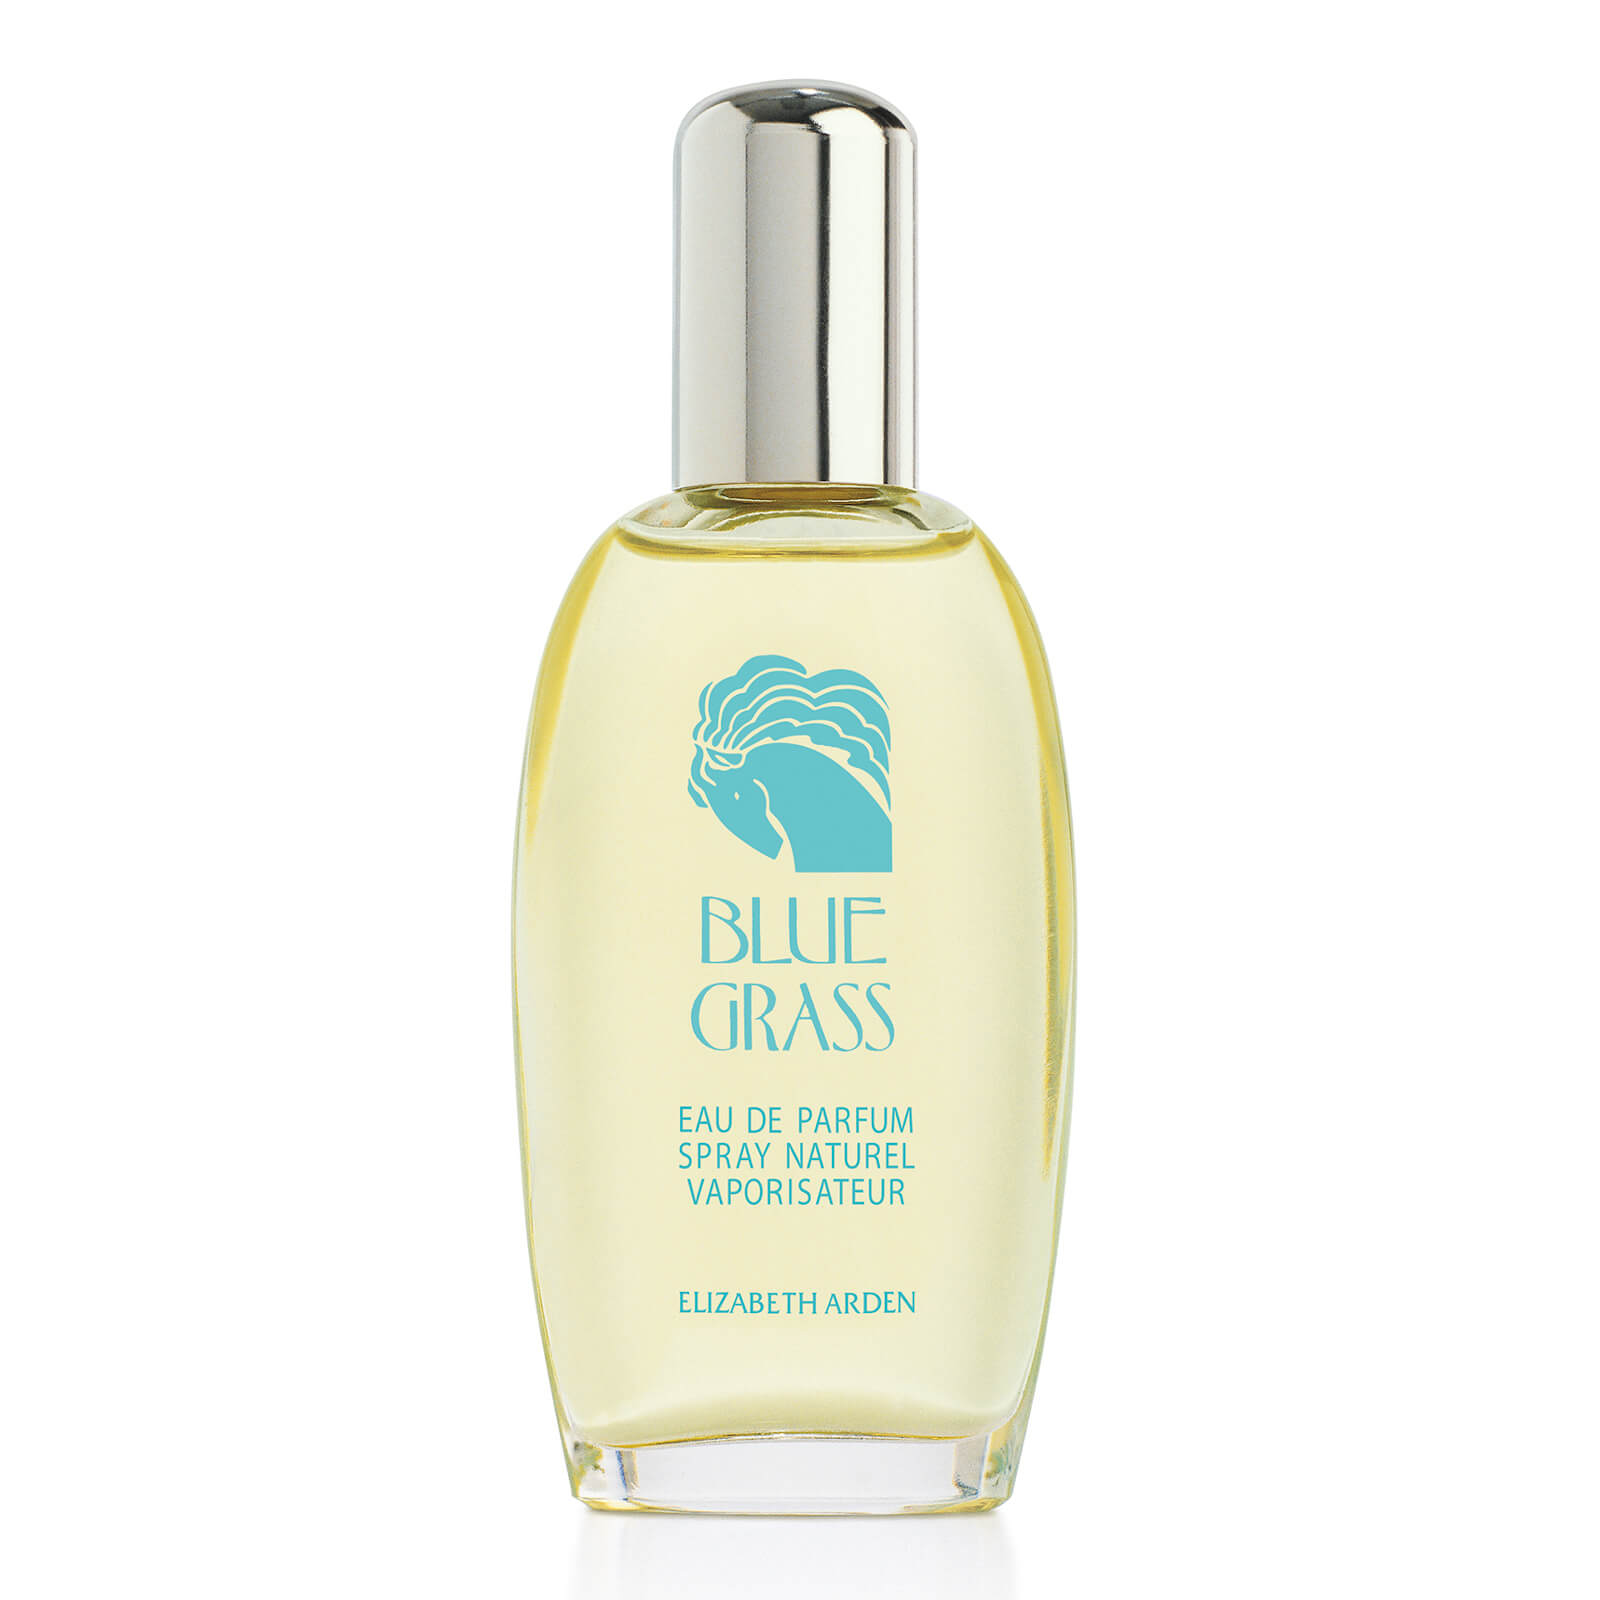 Image of Elizabeth Arden Blue Grass Eau de Parfum 100ml